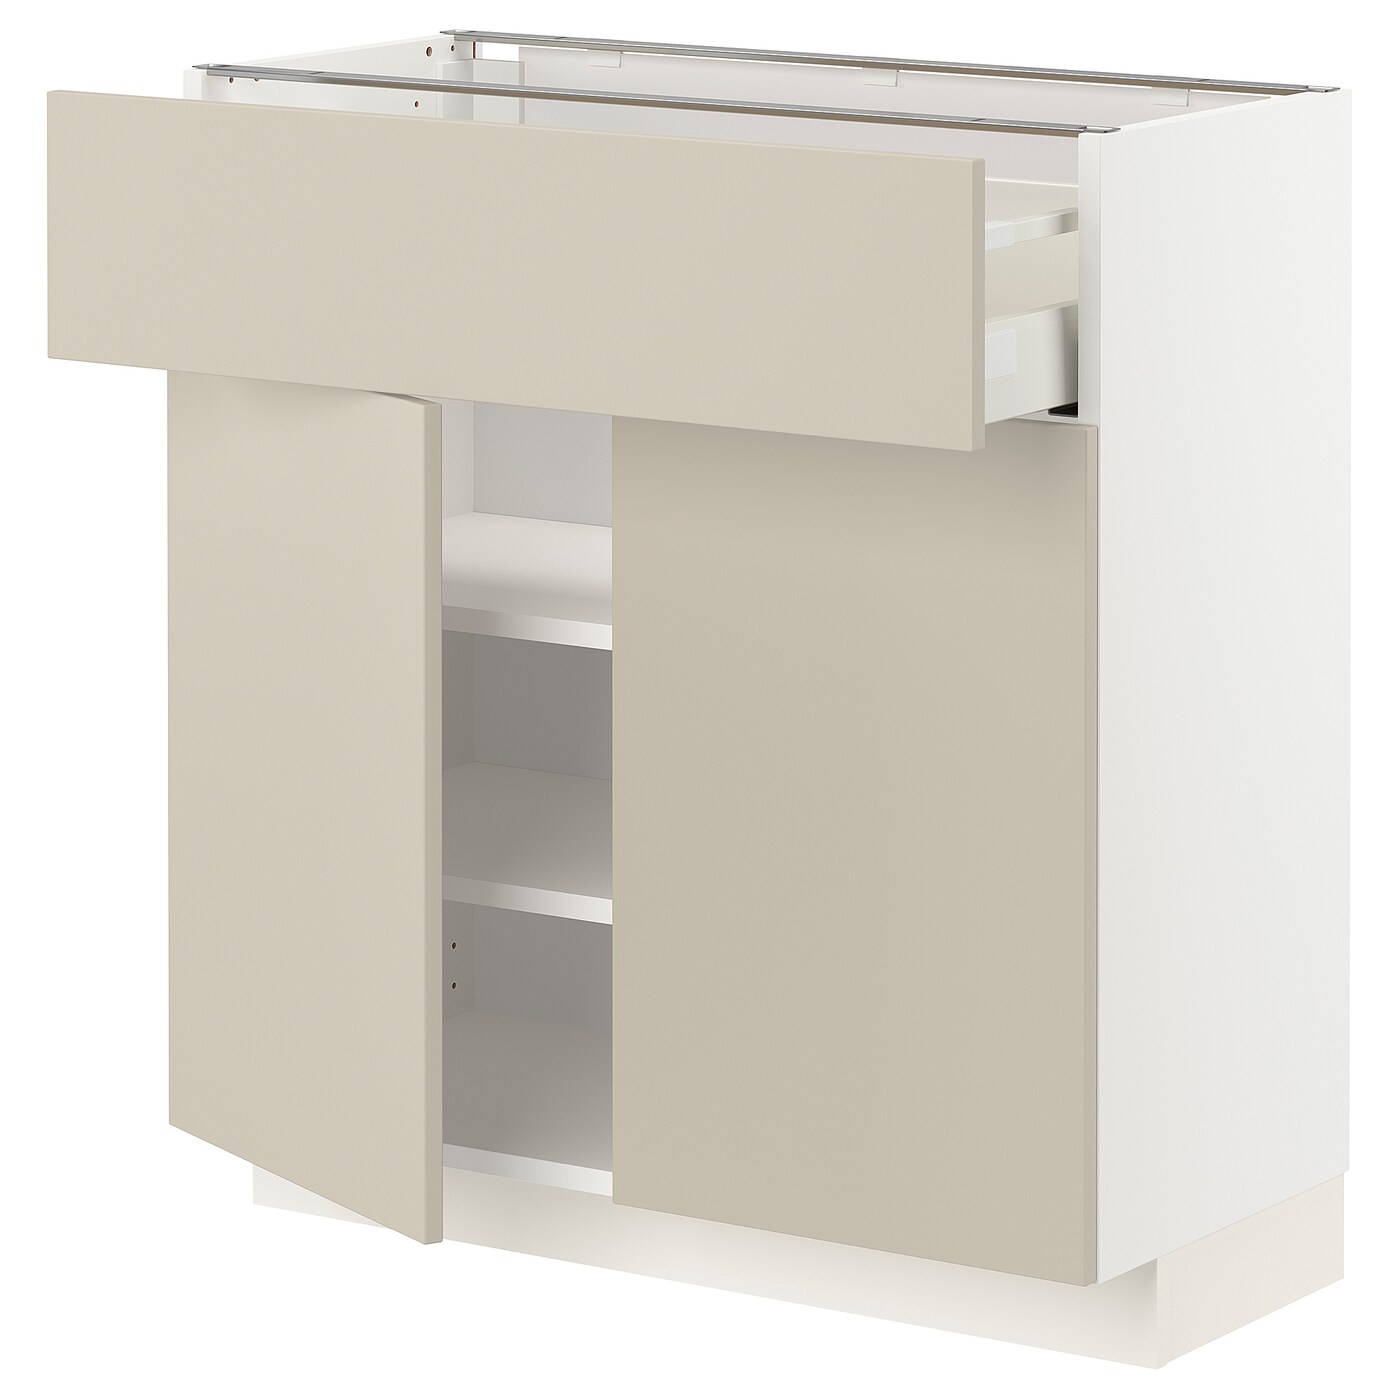 Напольный кухонный шкаф  - IKEA METOD MAXIMERA, 80x37x80см, белый/бежевый, МЕТОД МАКСИМЕРА ИКЕА